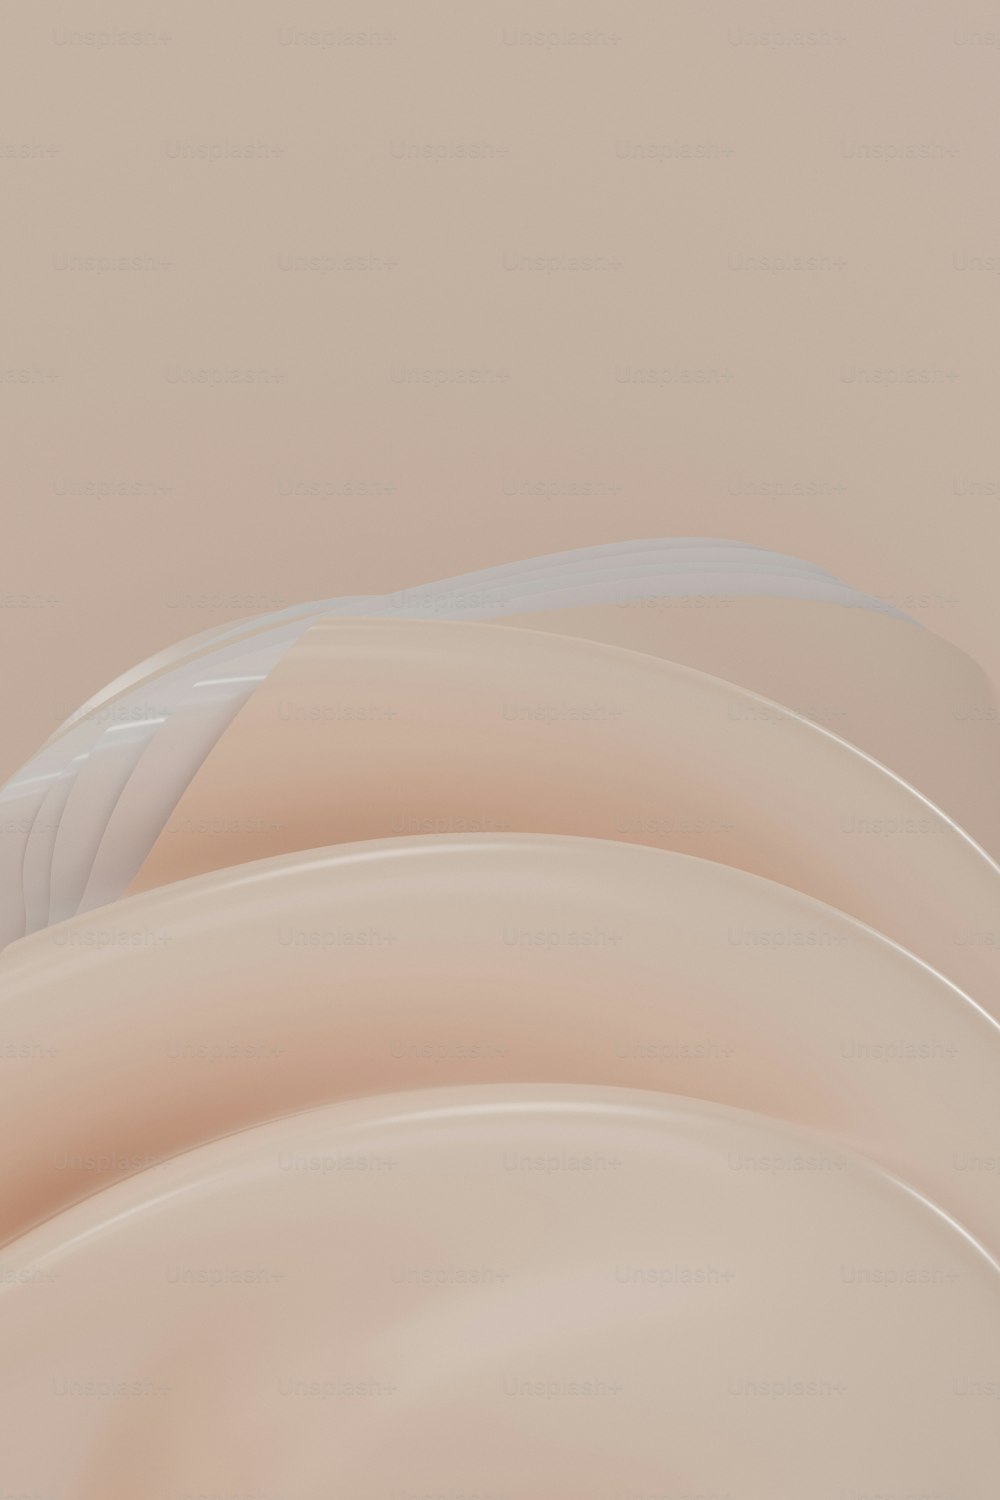 Una foto astratta di un oggetto beige curvo